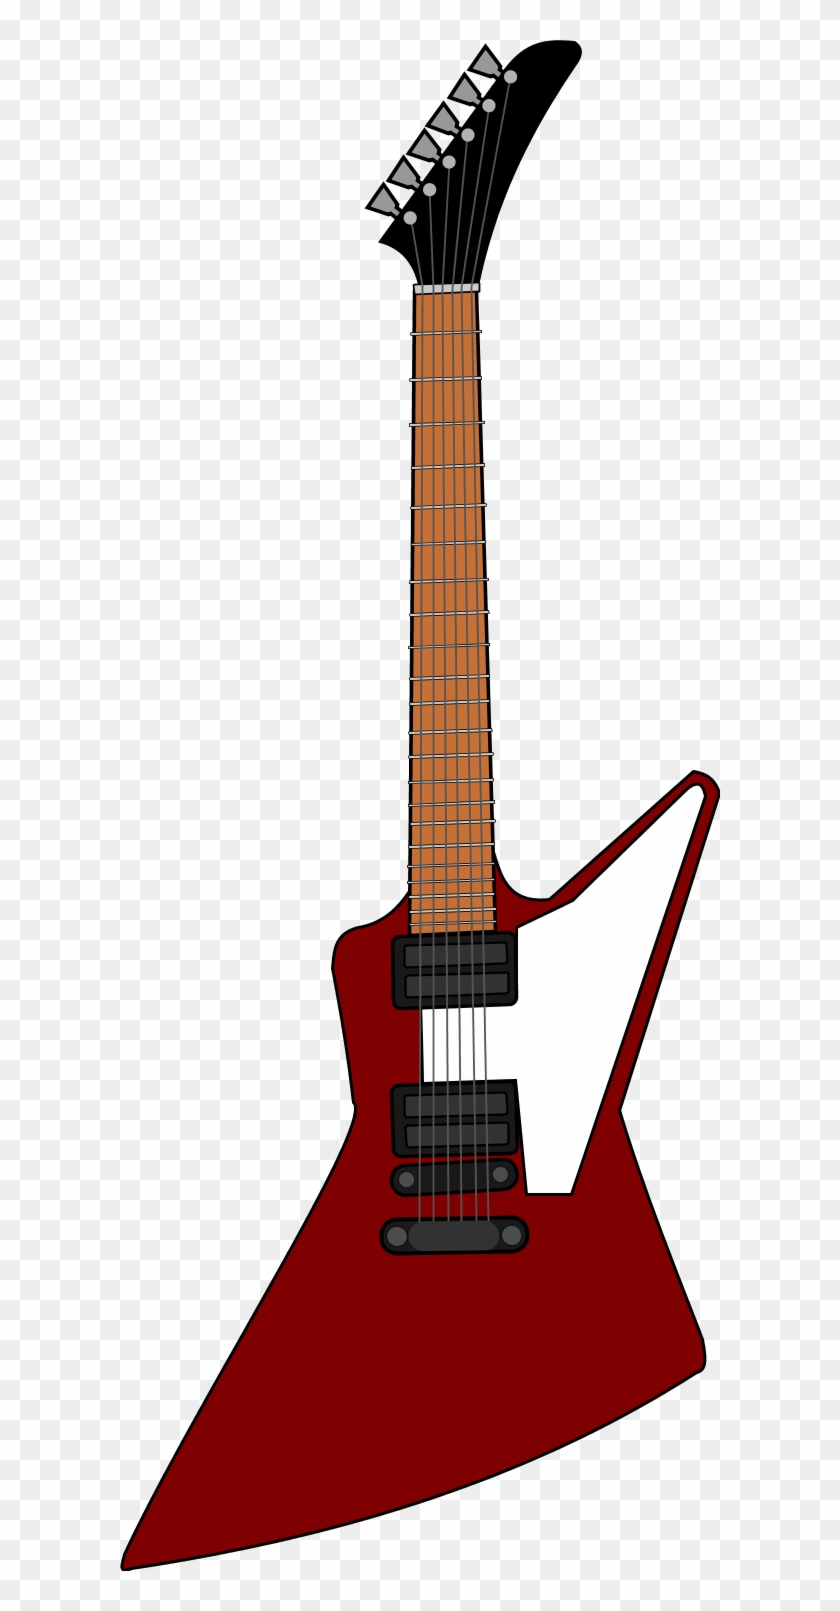 Gibson Electric Guitar Vector Clip Art - Gibson Explorer Clipart #172056